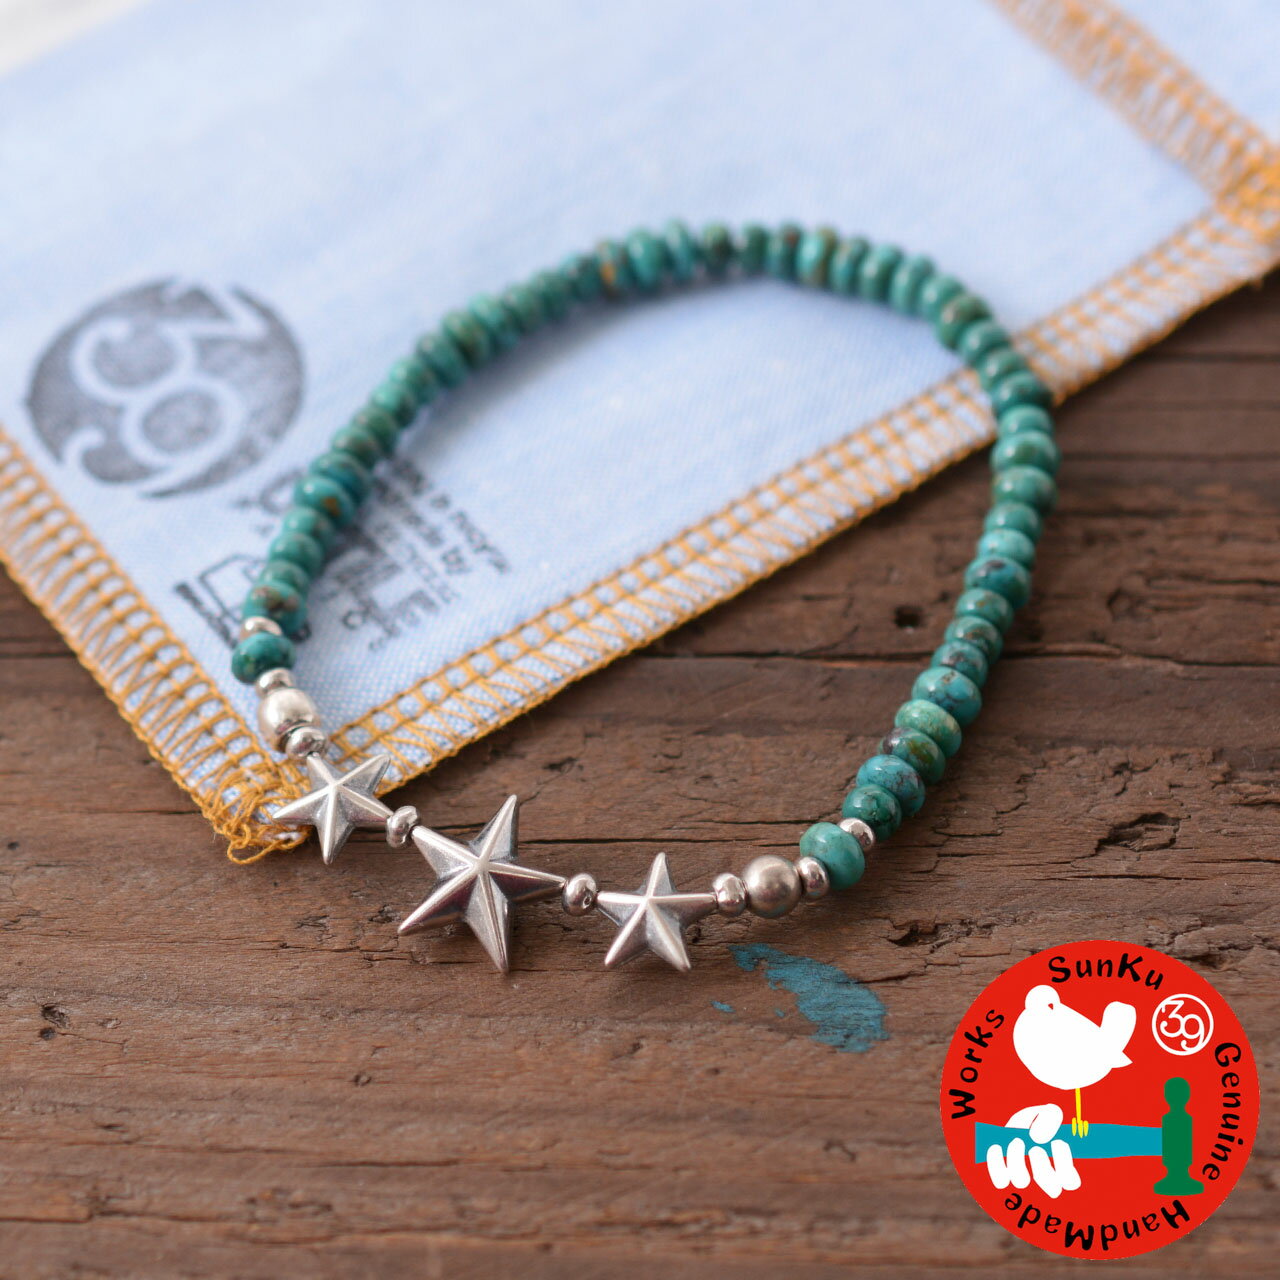 【SALE 30 OFF】Sunku 39 サンク Star Beads Bracelet Turquoise Beads SK-139-TUQ スタービーズブレスレット ターコイズビーズ ブレスレット シルバー 925 MEN 039 S/LADY 039 S 2022SS